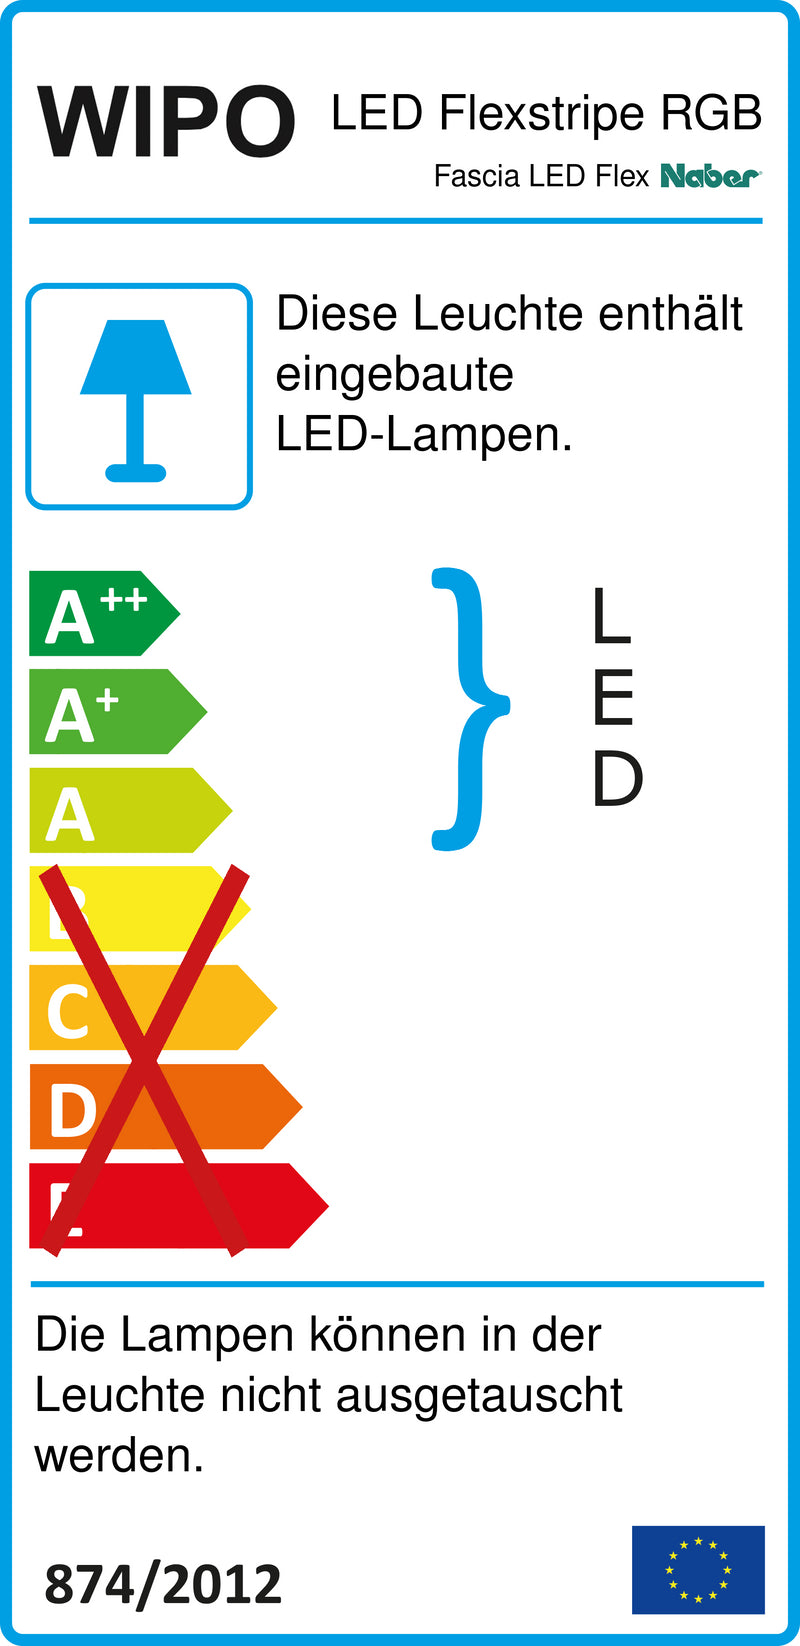 E-Label zu Zeichnung zu Fascia LED Flex Stripes RGB als Variante L 300 mm von Naber GmbH in der Kategorie Lichttechnik in Österreich auf conceptshop.at